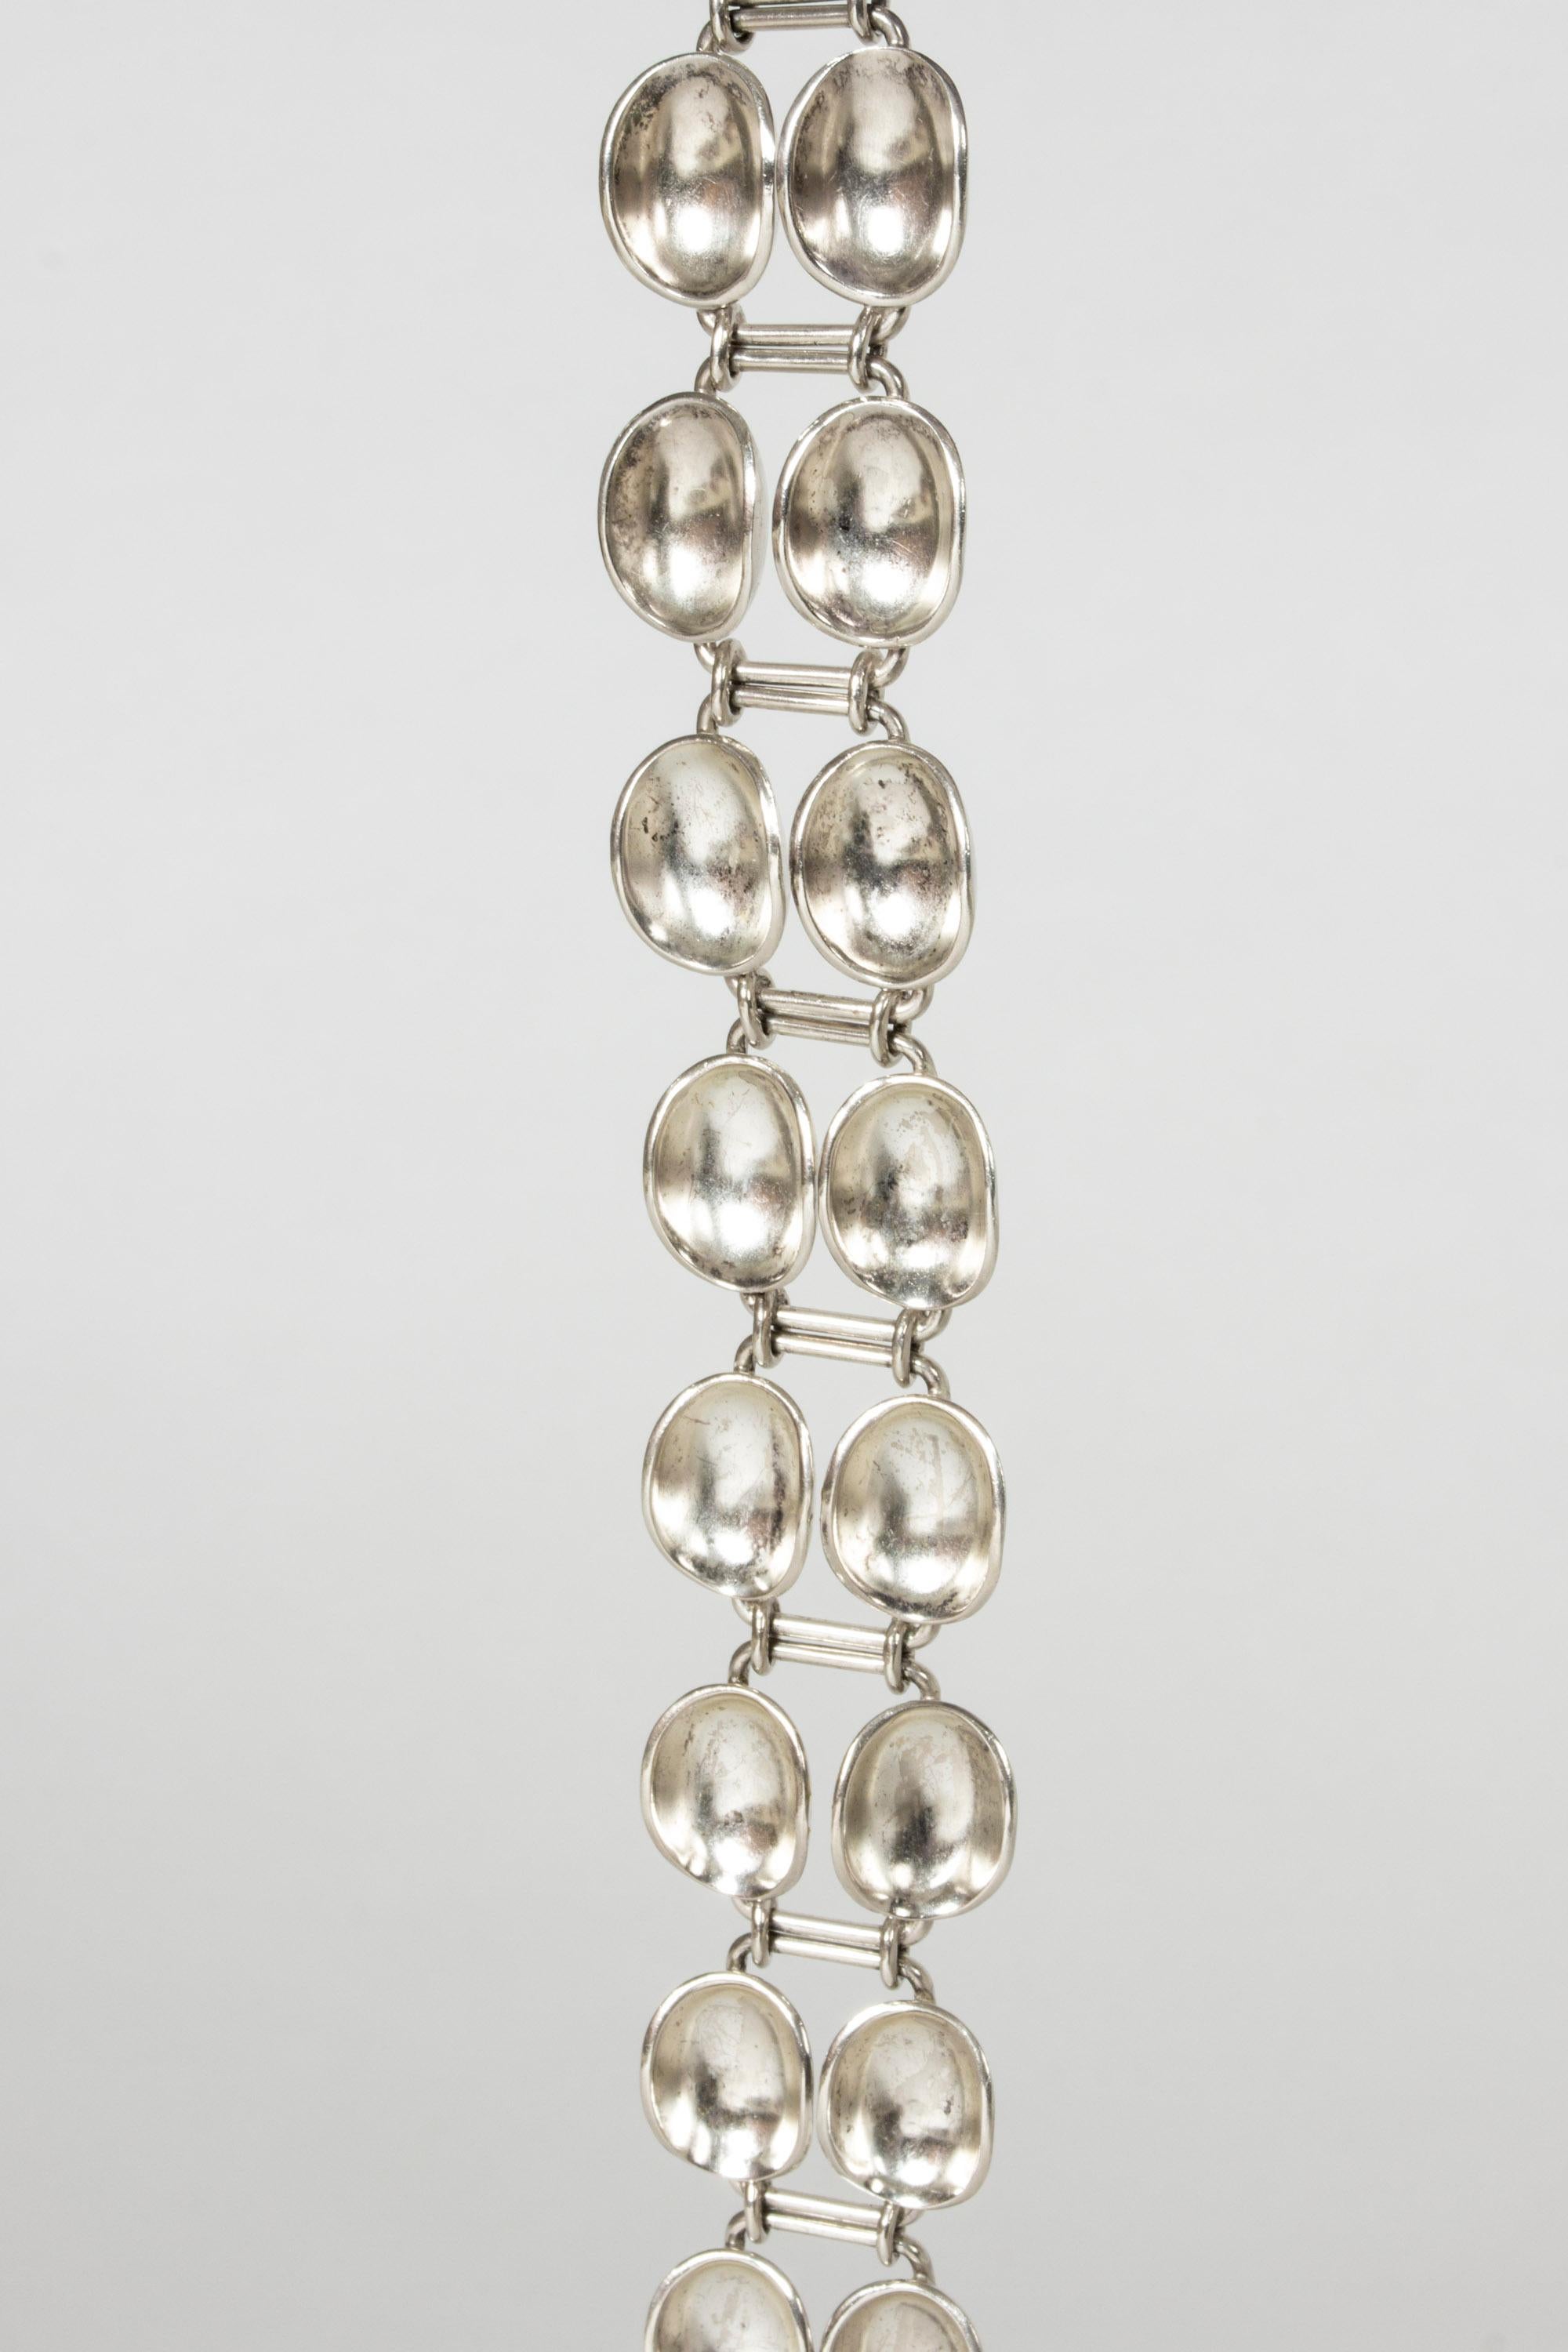 Modernist Silver “Bowls” Bracelet by Sigurd Persson for Stigbergt, Sweden, 1955